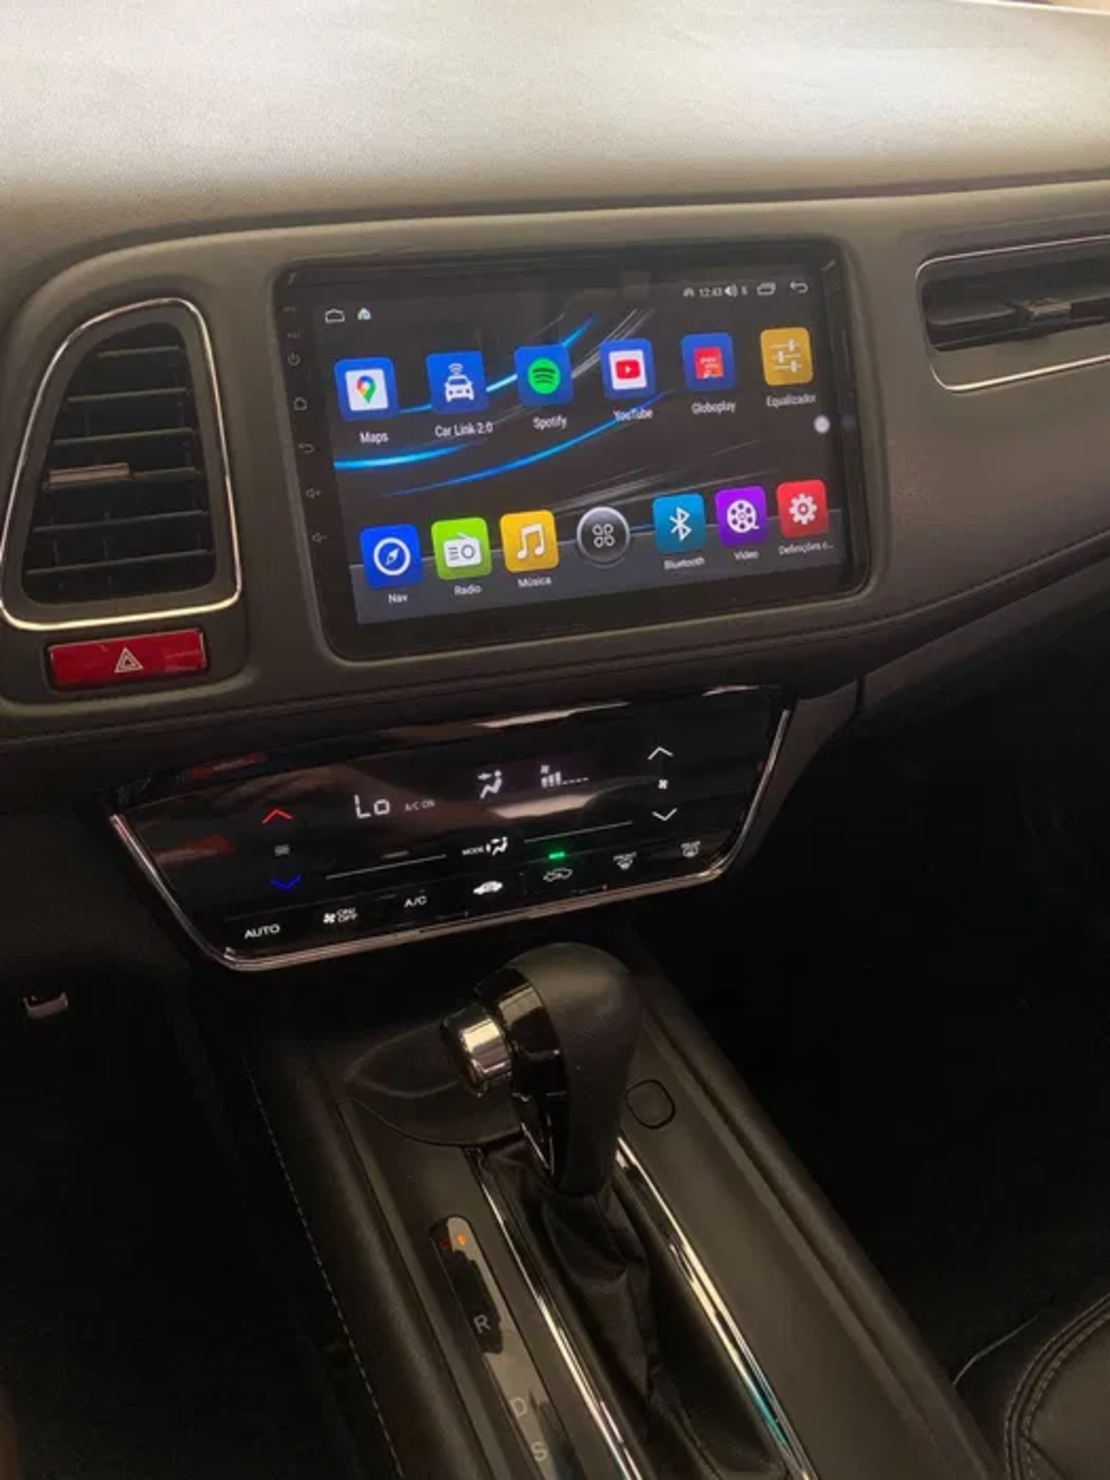 Honda Hr-V 2013 -2019 Android Multimedia/Navigation